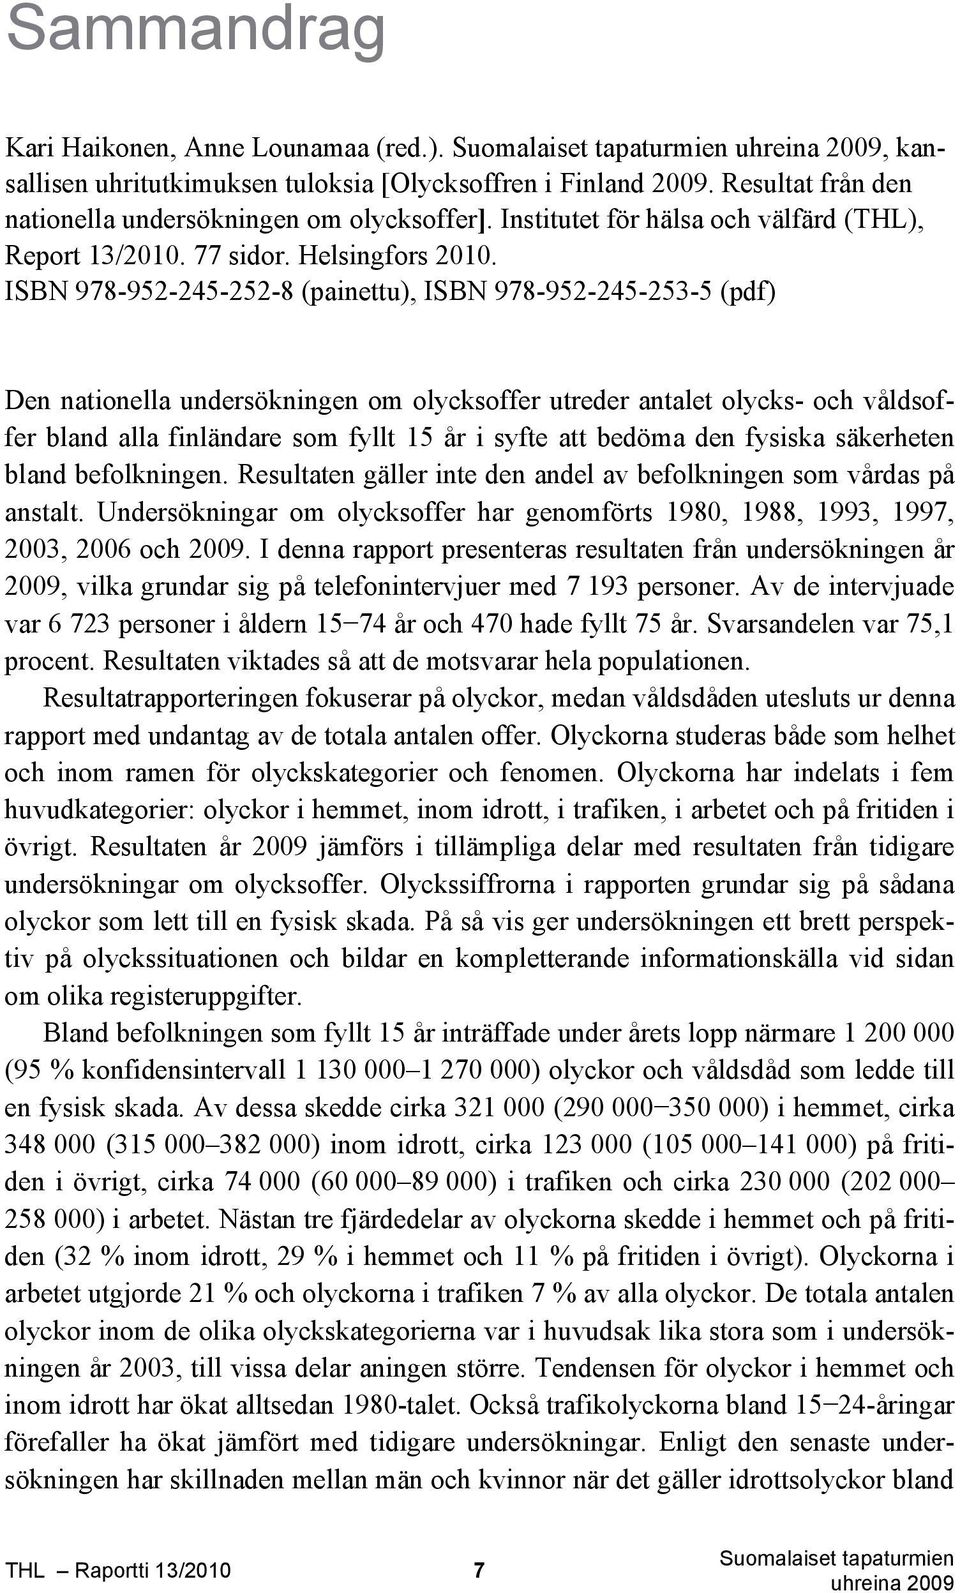 ISBN 978-952-245-252-8 (painettu), ISBN 978-952-245-253-5 (pdf) Den nationella undersökningen om olycksoffer utreder antalet olycks- och våldsoffer bland alla finländare som fyllt 15 år i syfte att